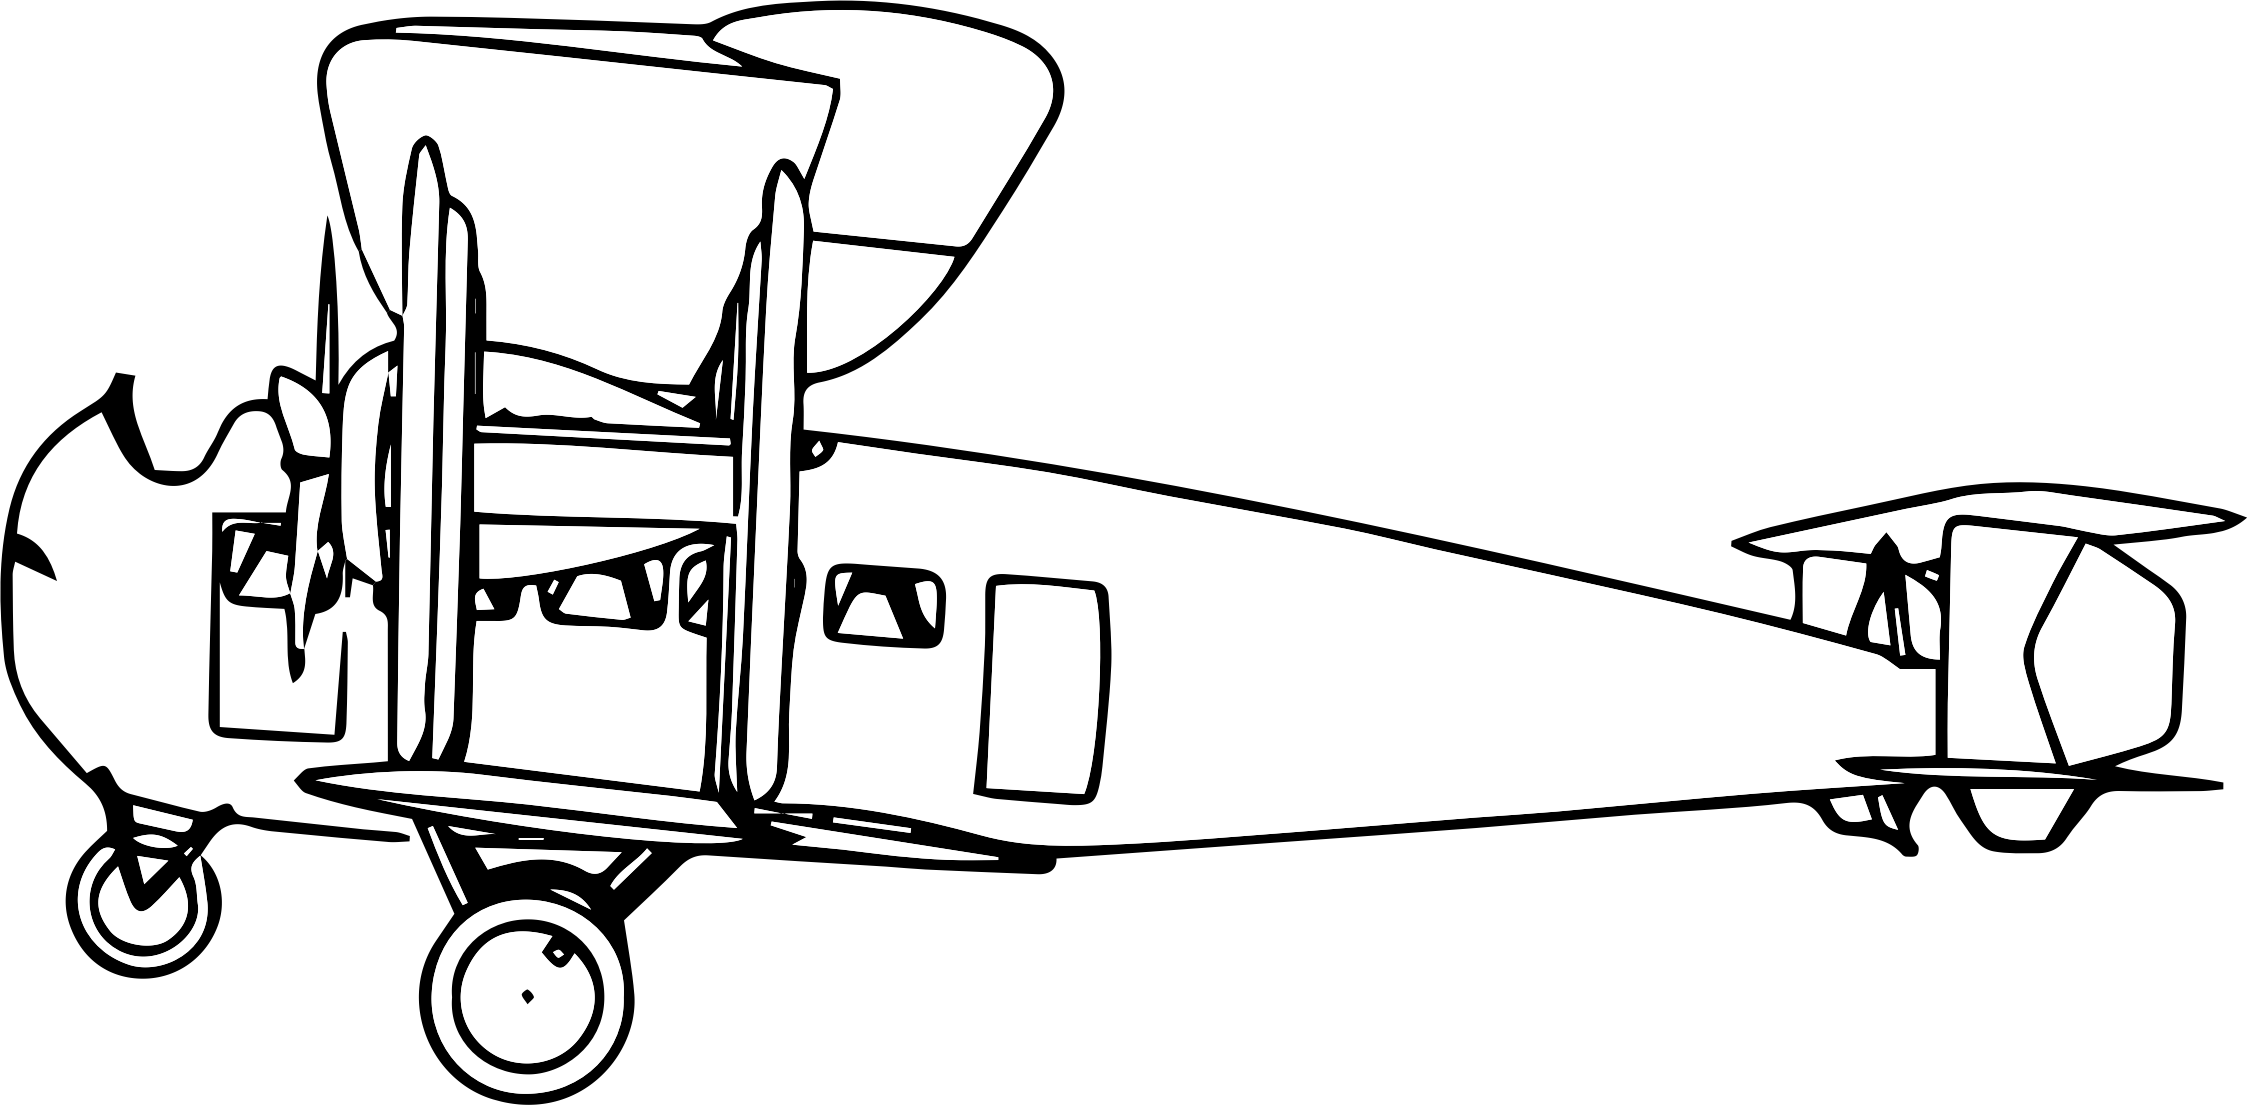 Clipart - Propeller-driven Aircraft (2248x1105)